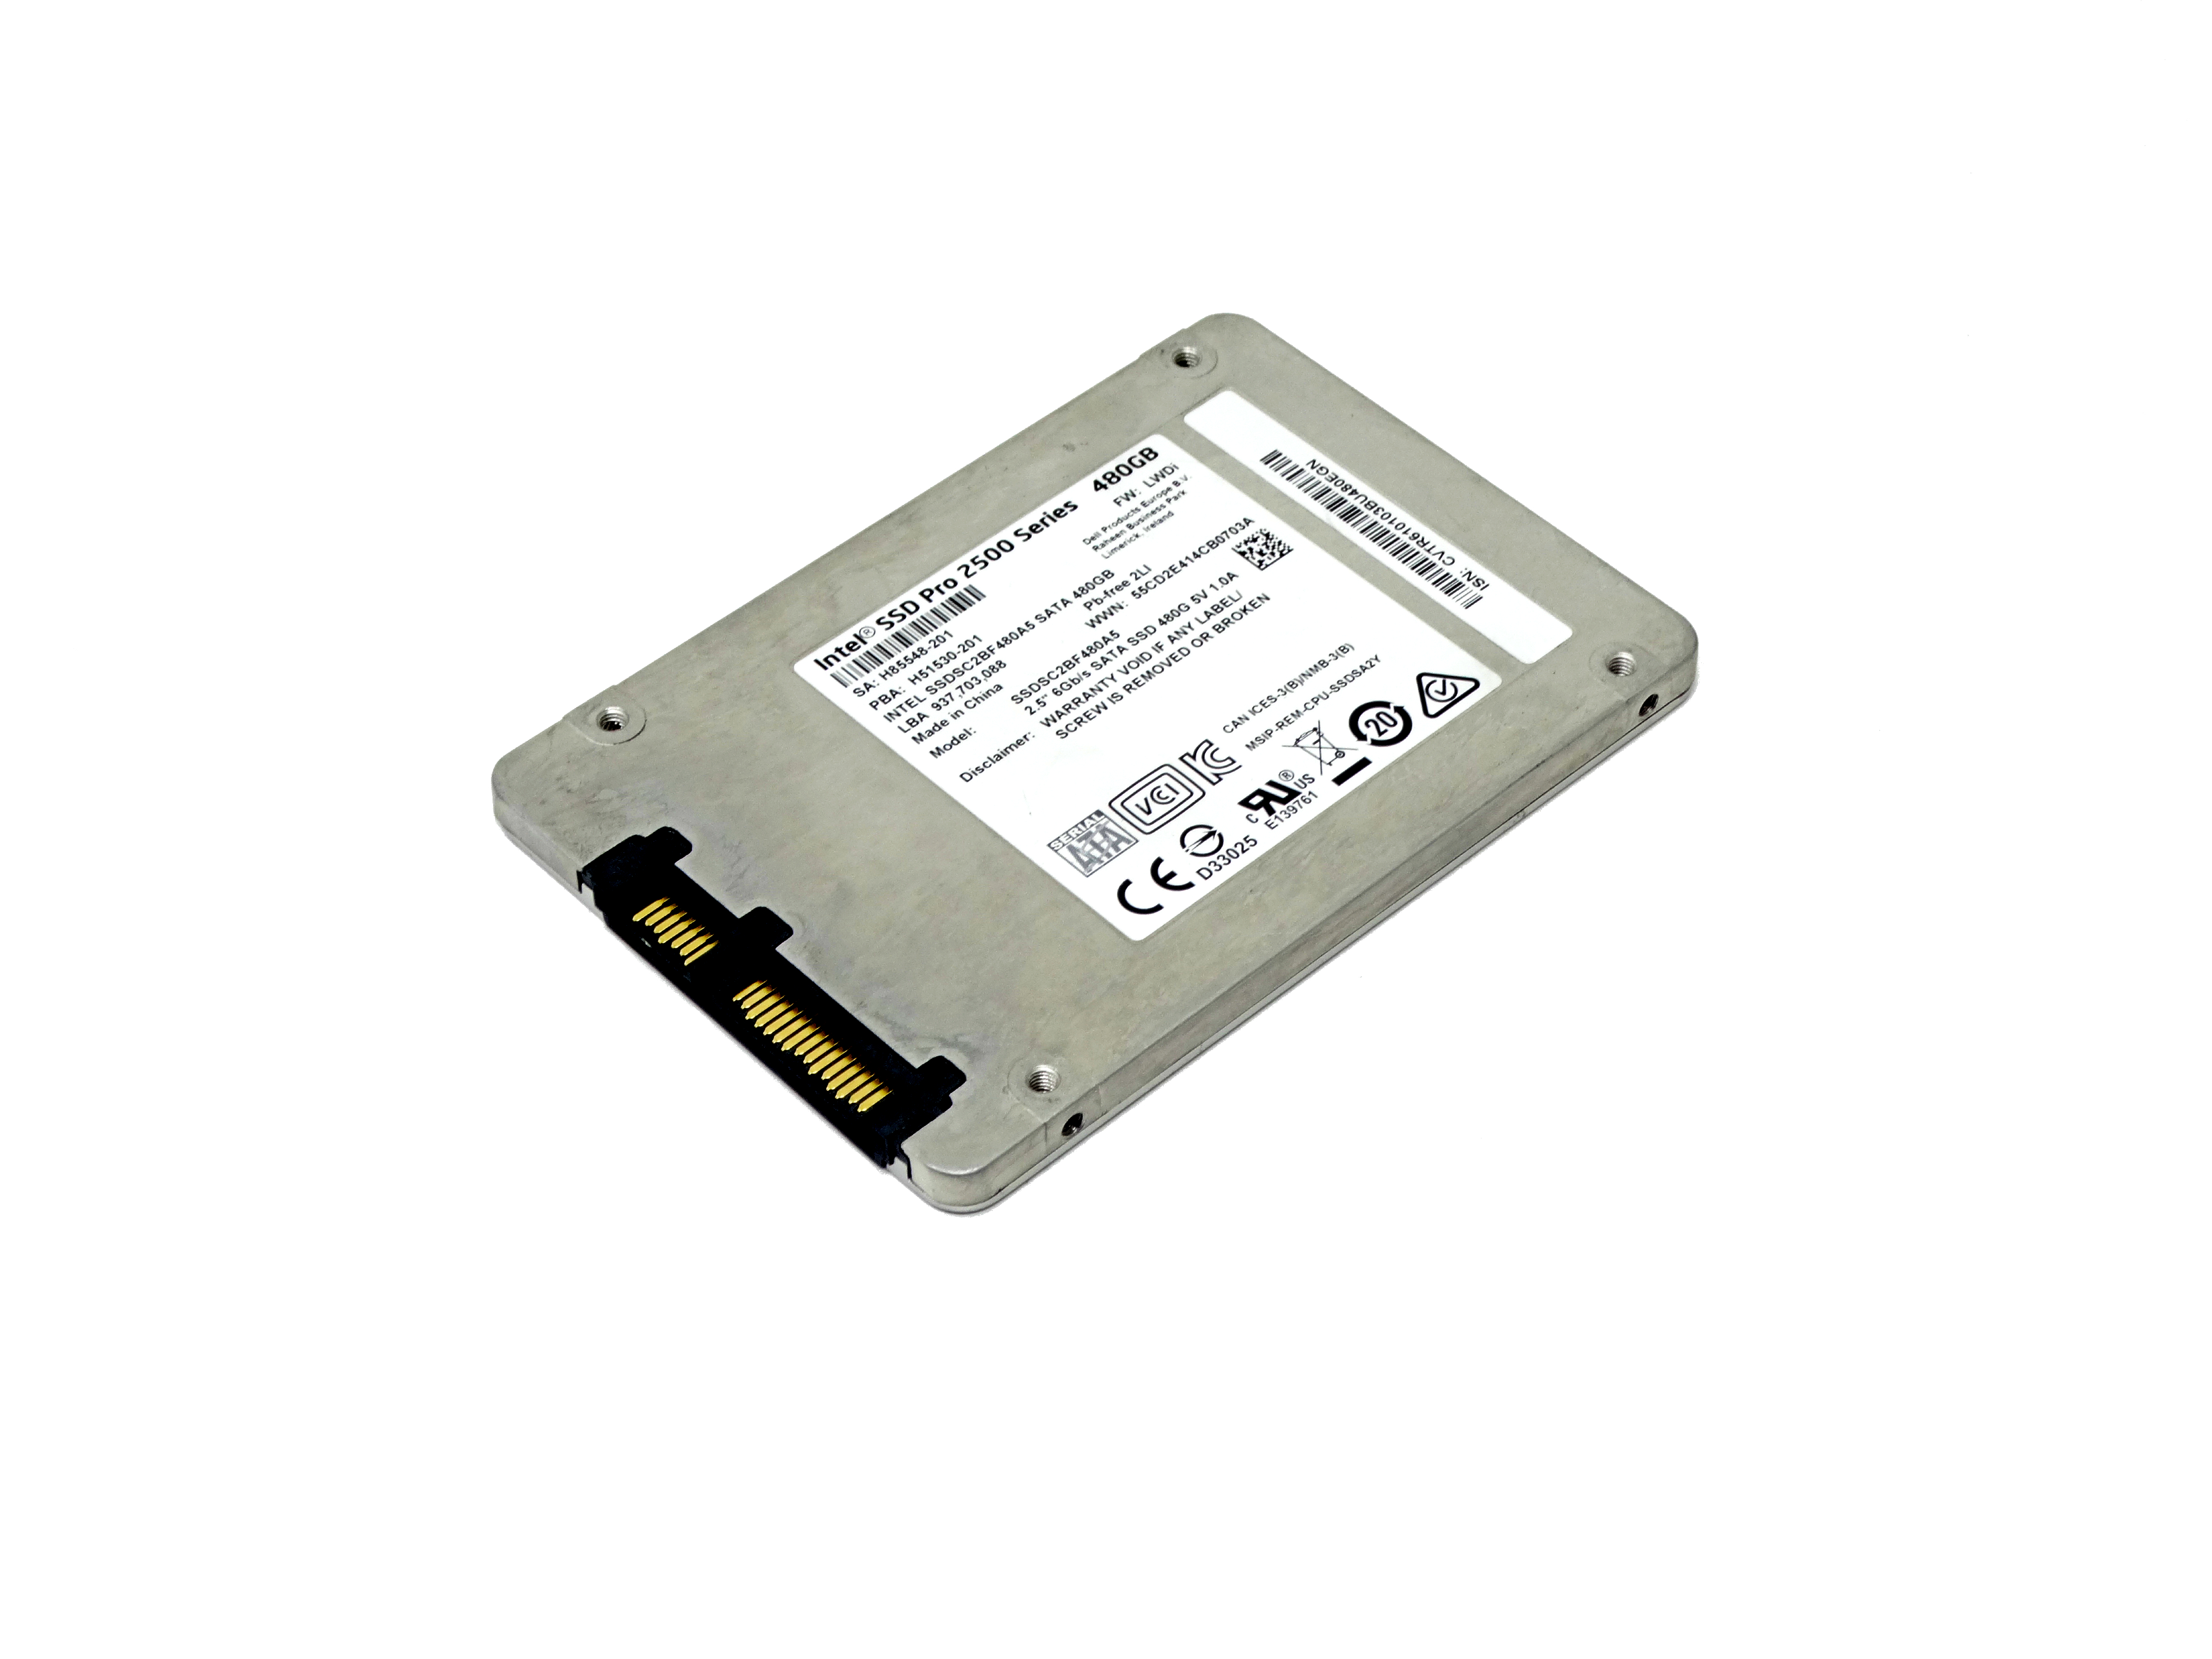 Intel SSD Pro 2500 480GB 6Gbps 2.5'' SSD (SSDSC2BF480AS)